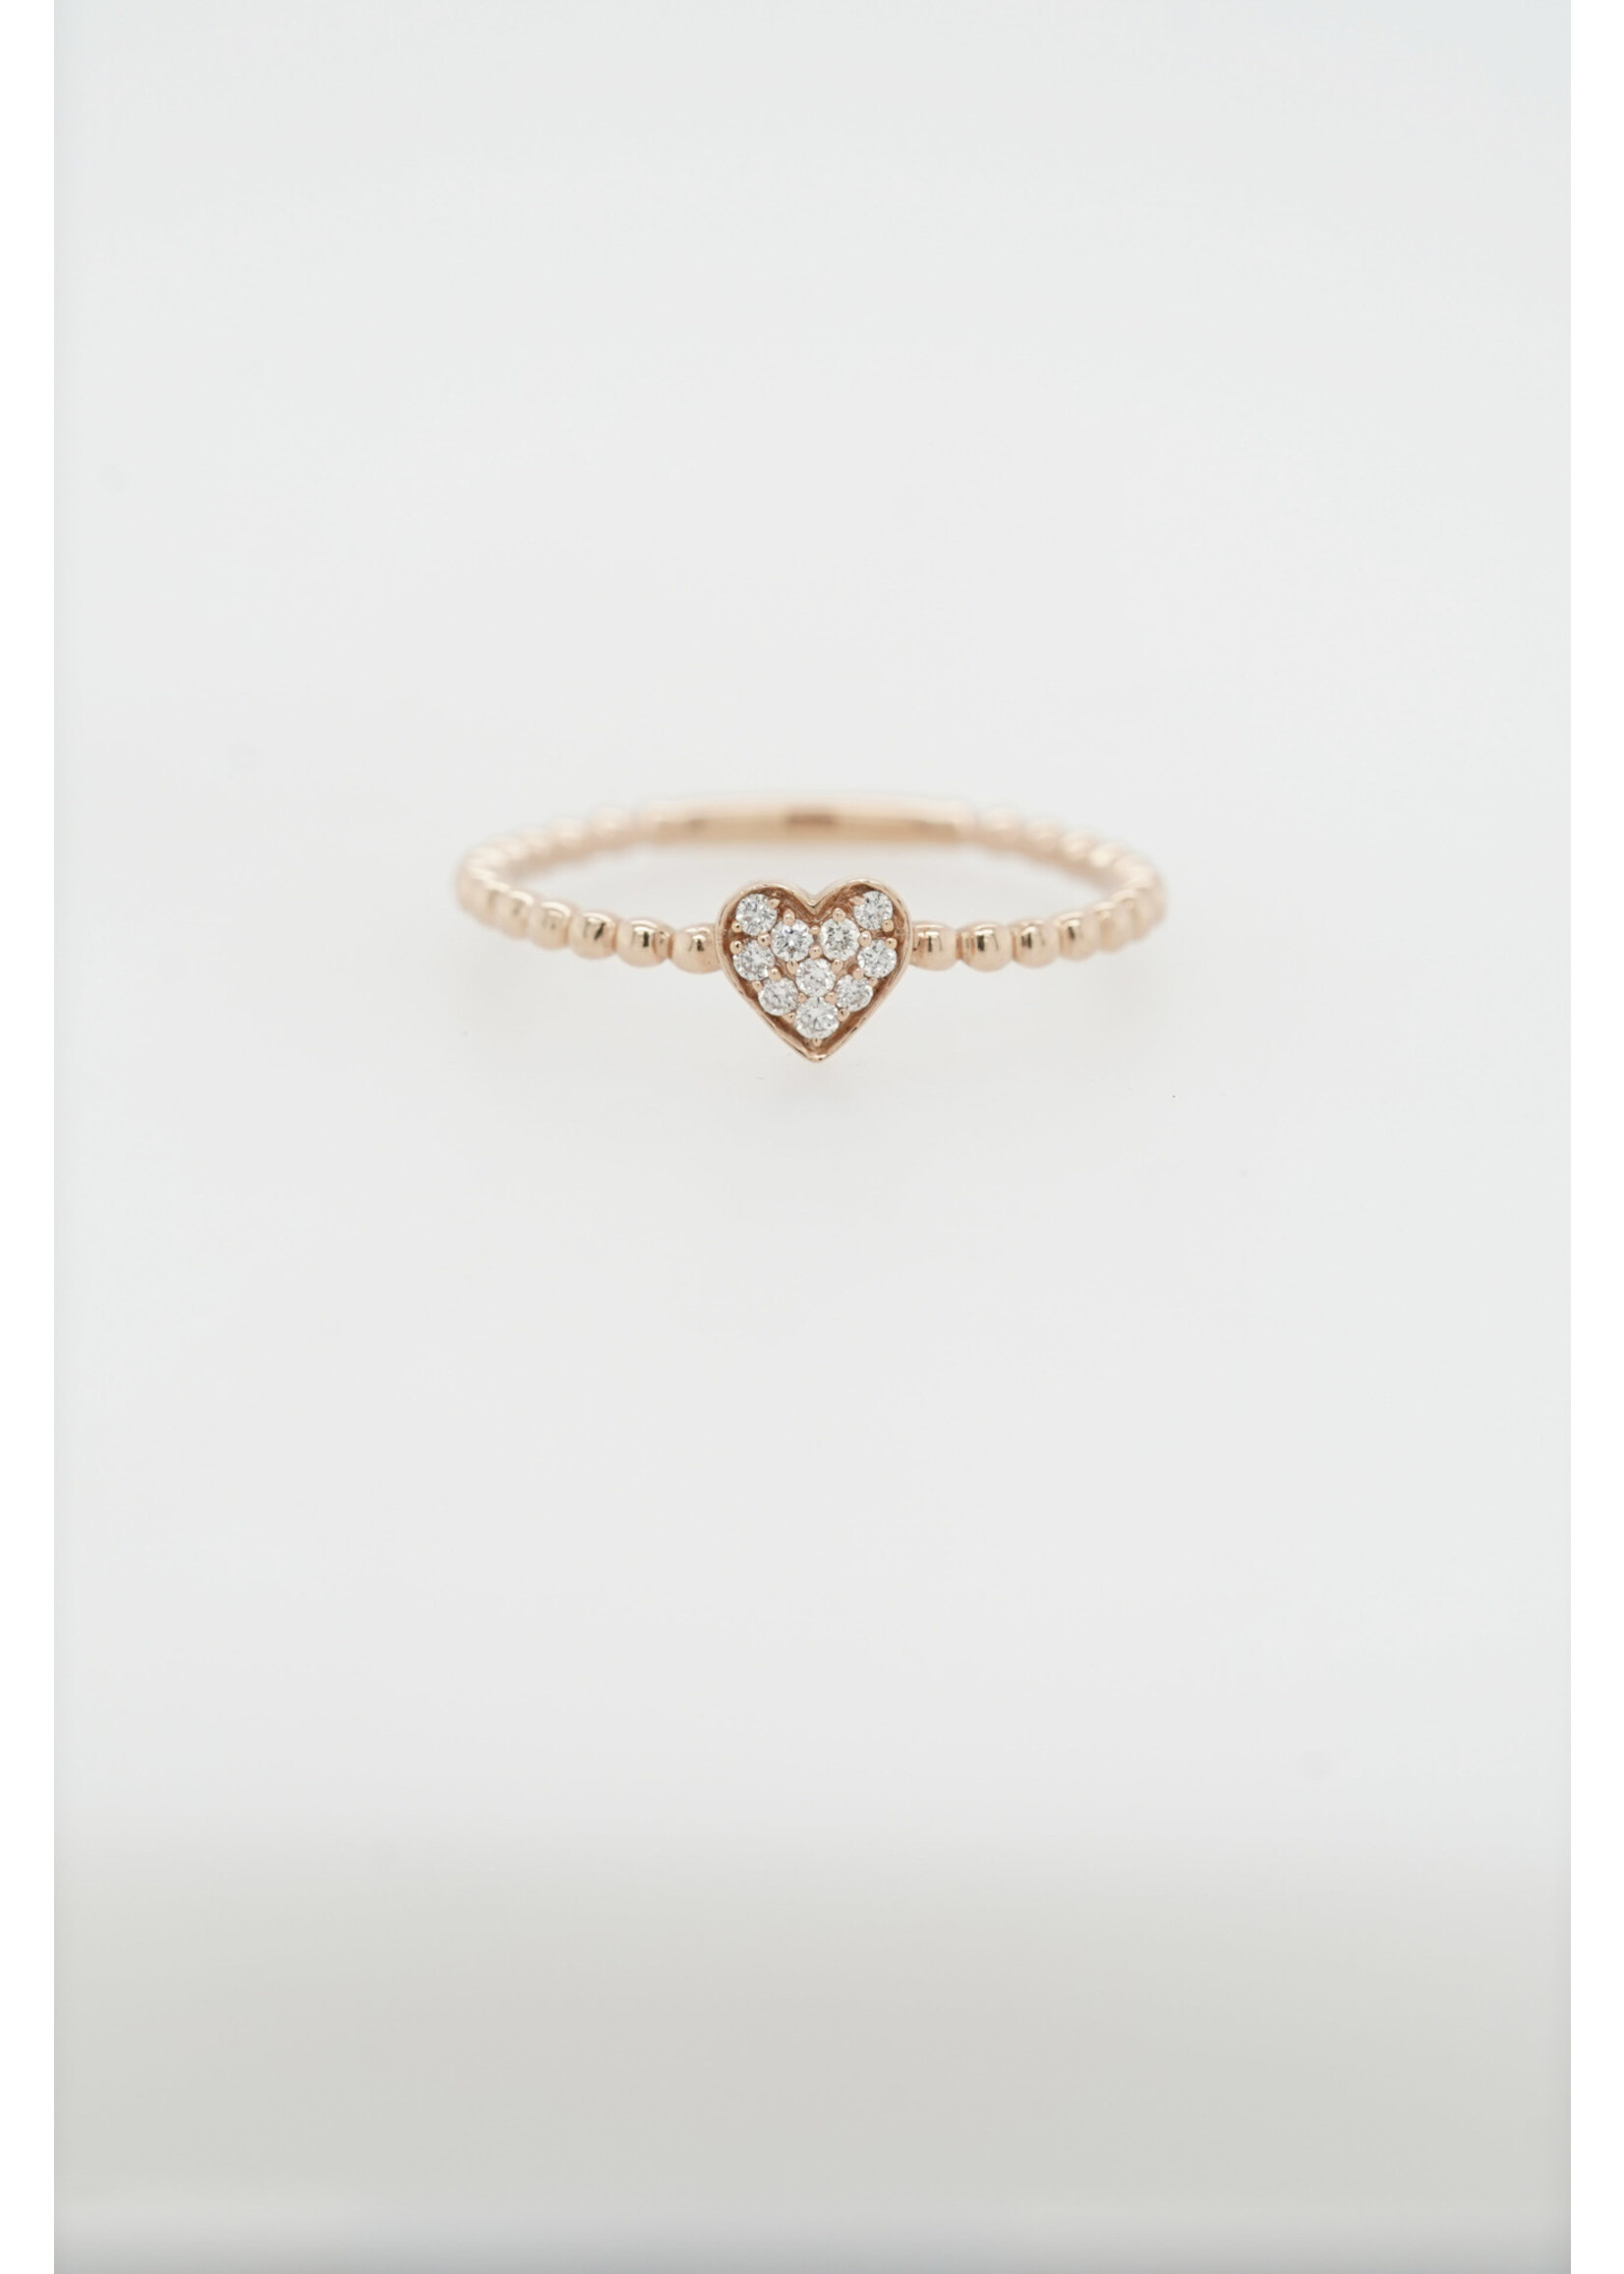 14KR 1.4g .07ctw Diamond Beaded Heart Ring (size 7)